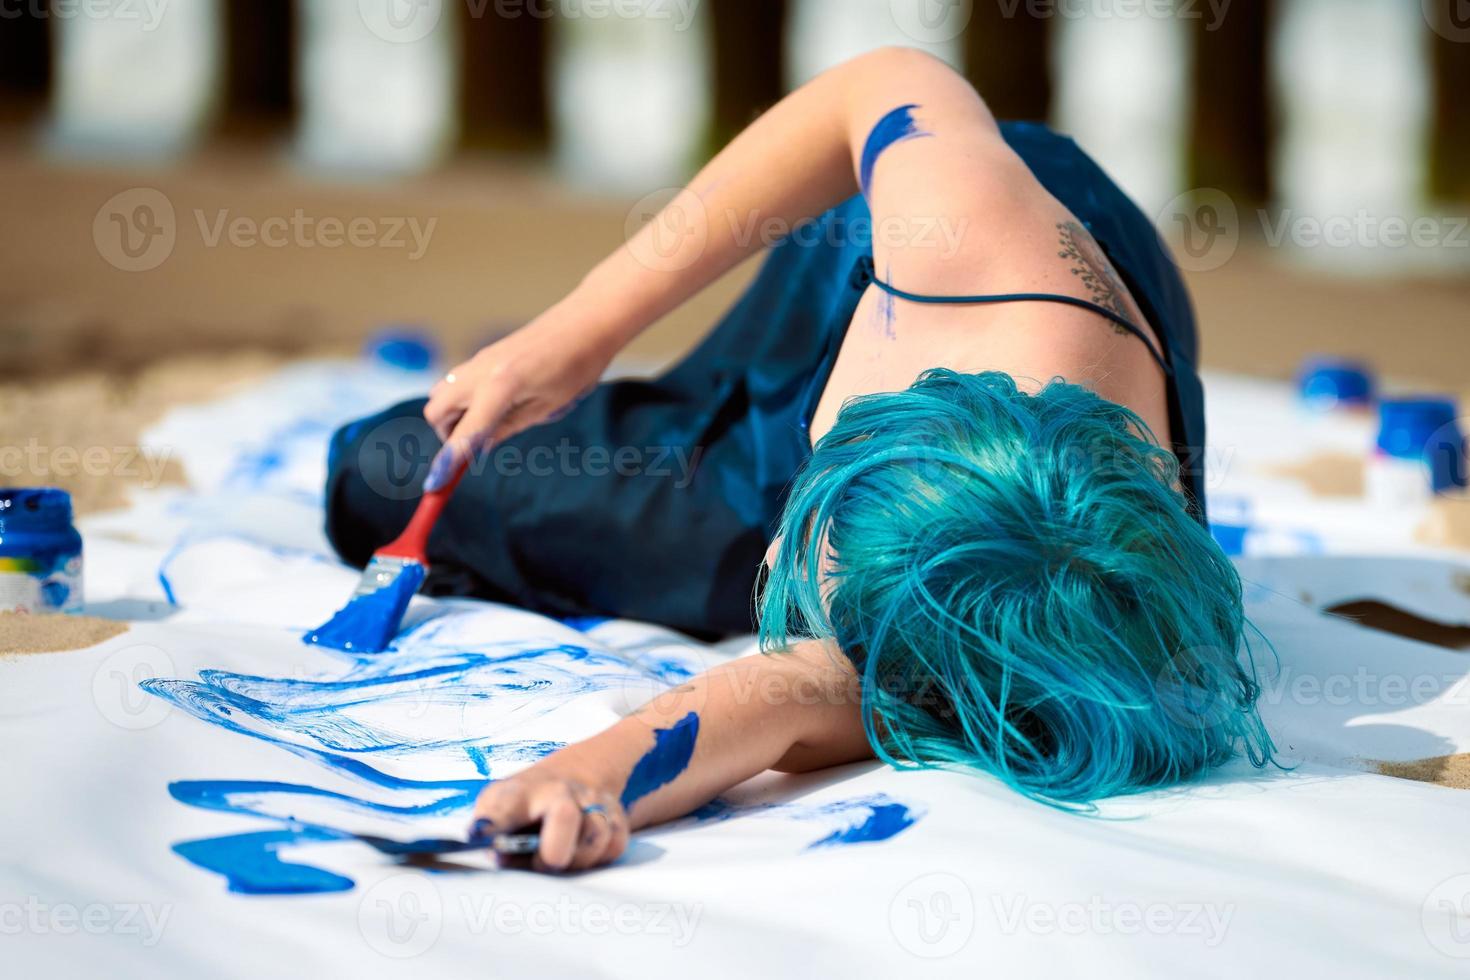 Artiste de performance artistique femme aux cheveux bleus enduite de peintures à la gouache sur une grande toile sur la plage photo